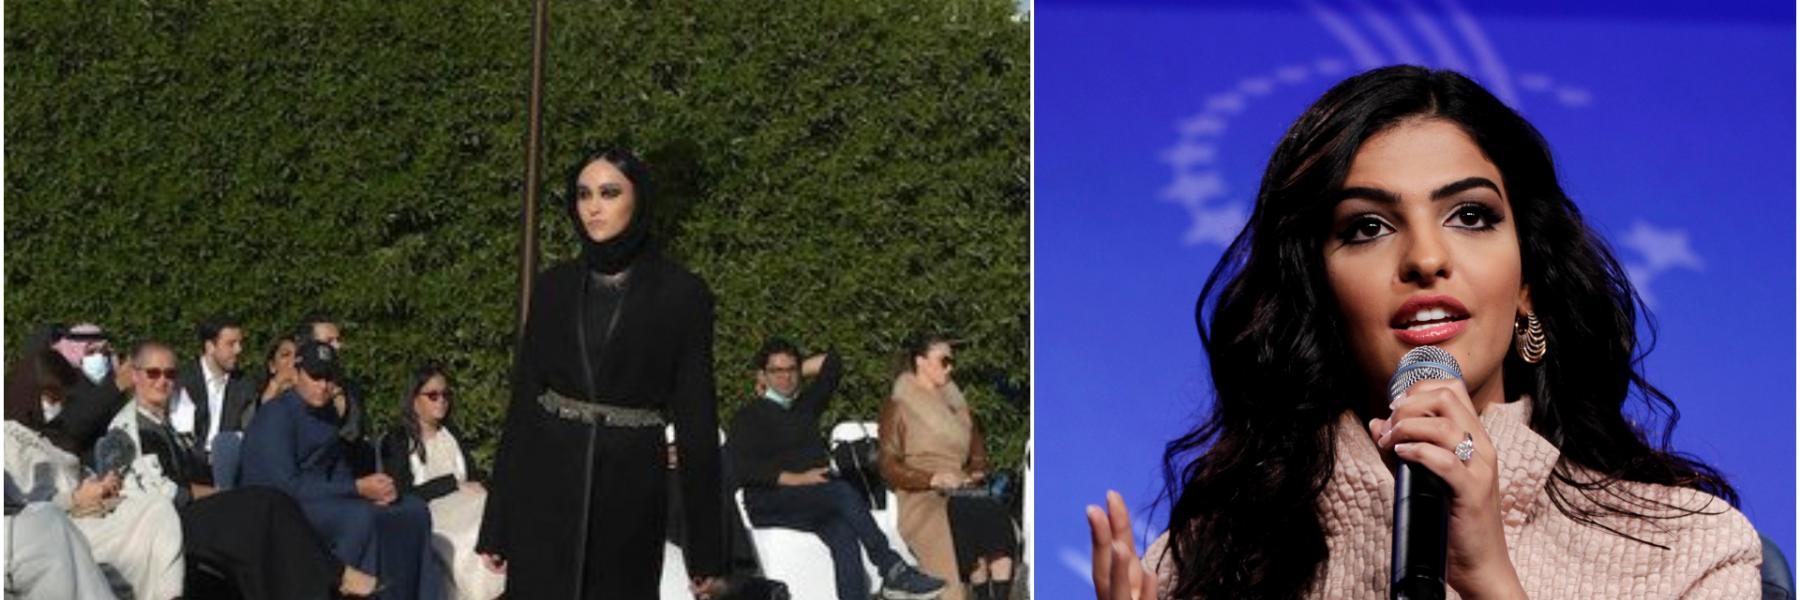 أميرة سعودية تحول العباءة التقليدية الى لباس عالمي